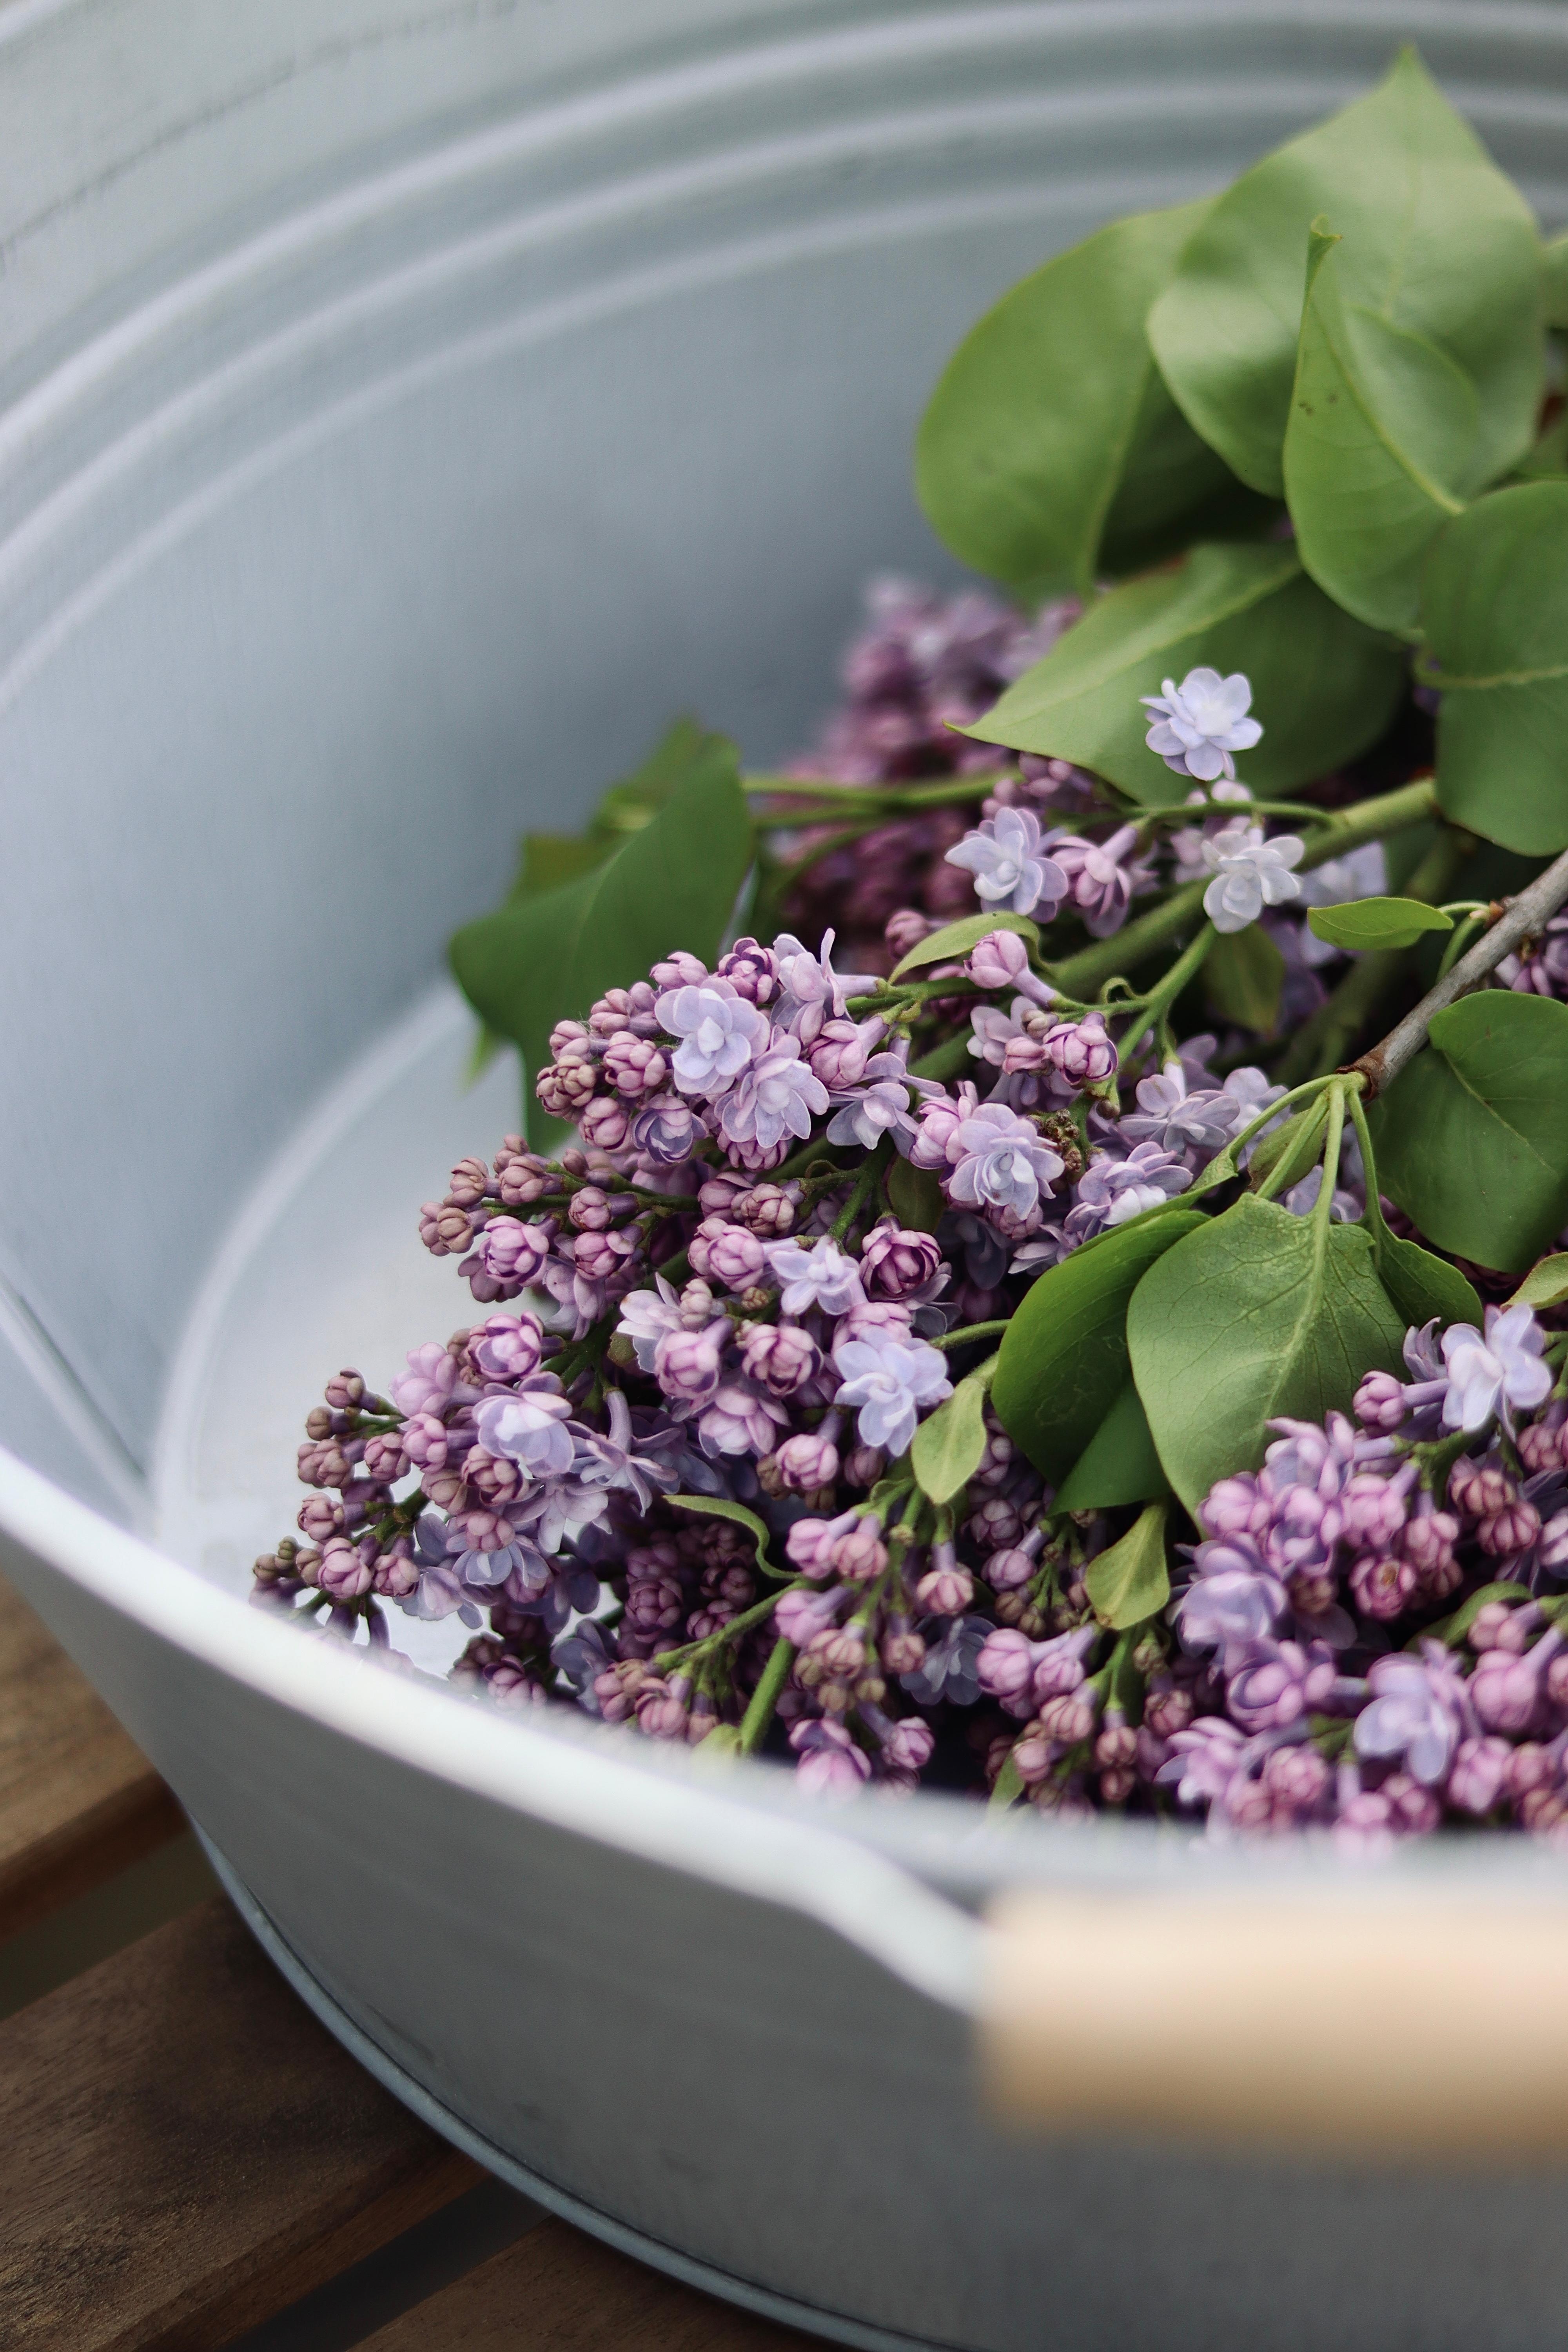 Flieder 💜
#flieder#fliederliebe#freshflowers#lilac